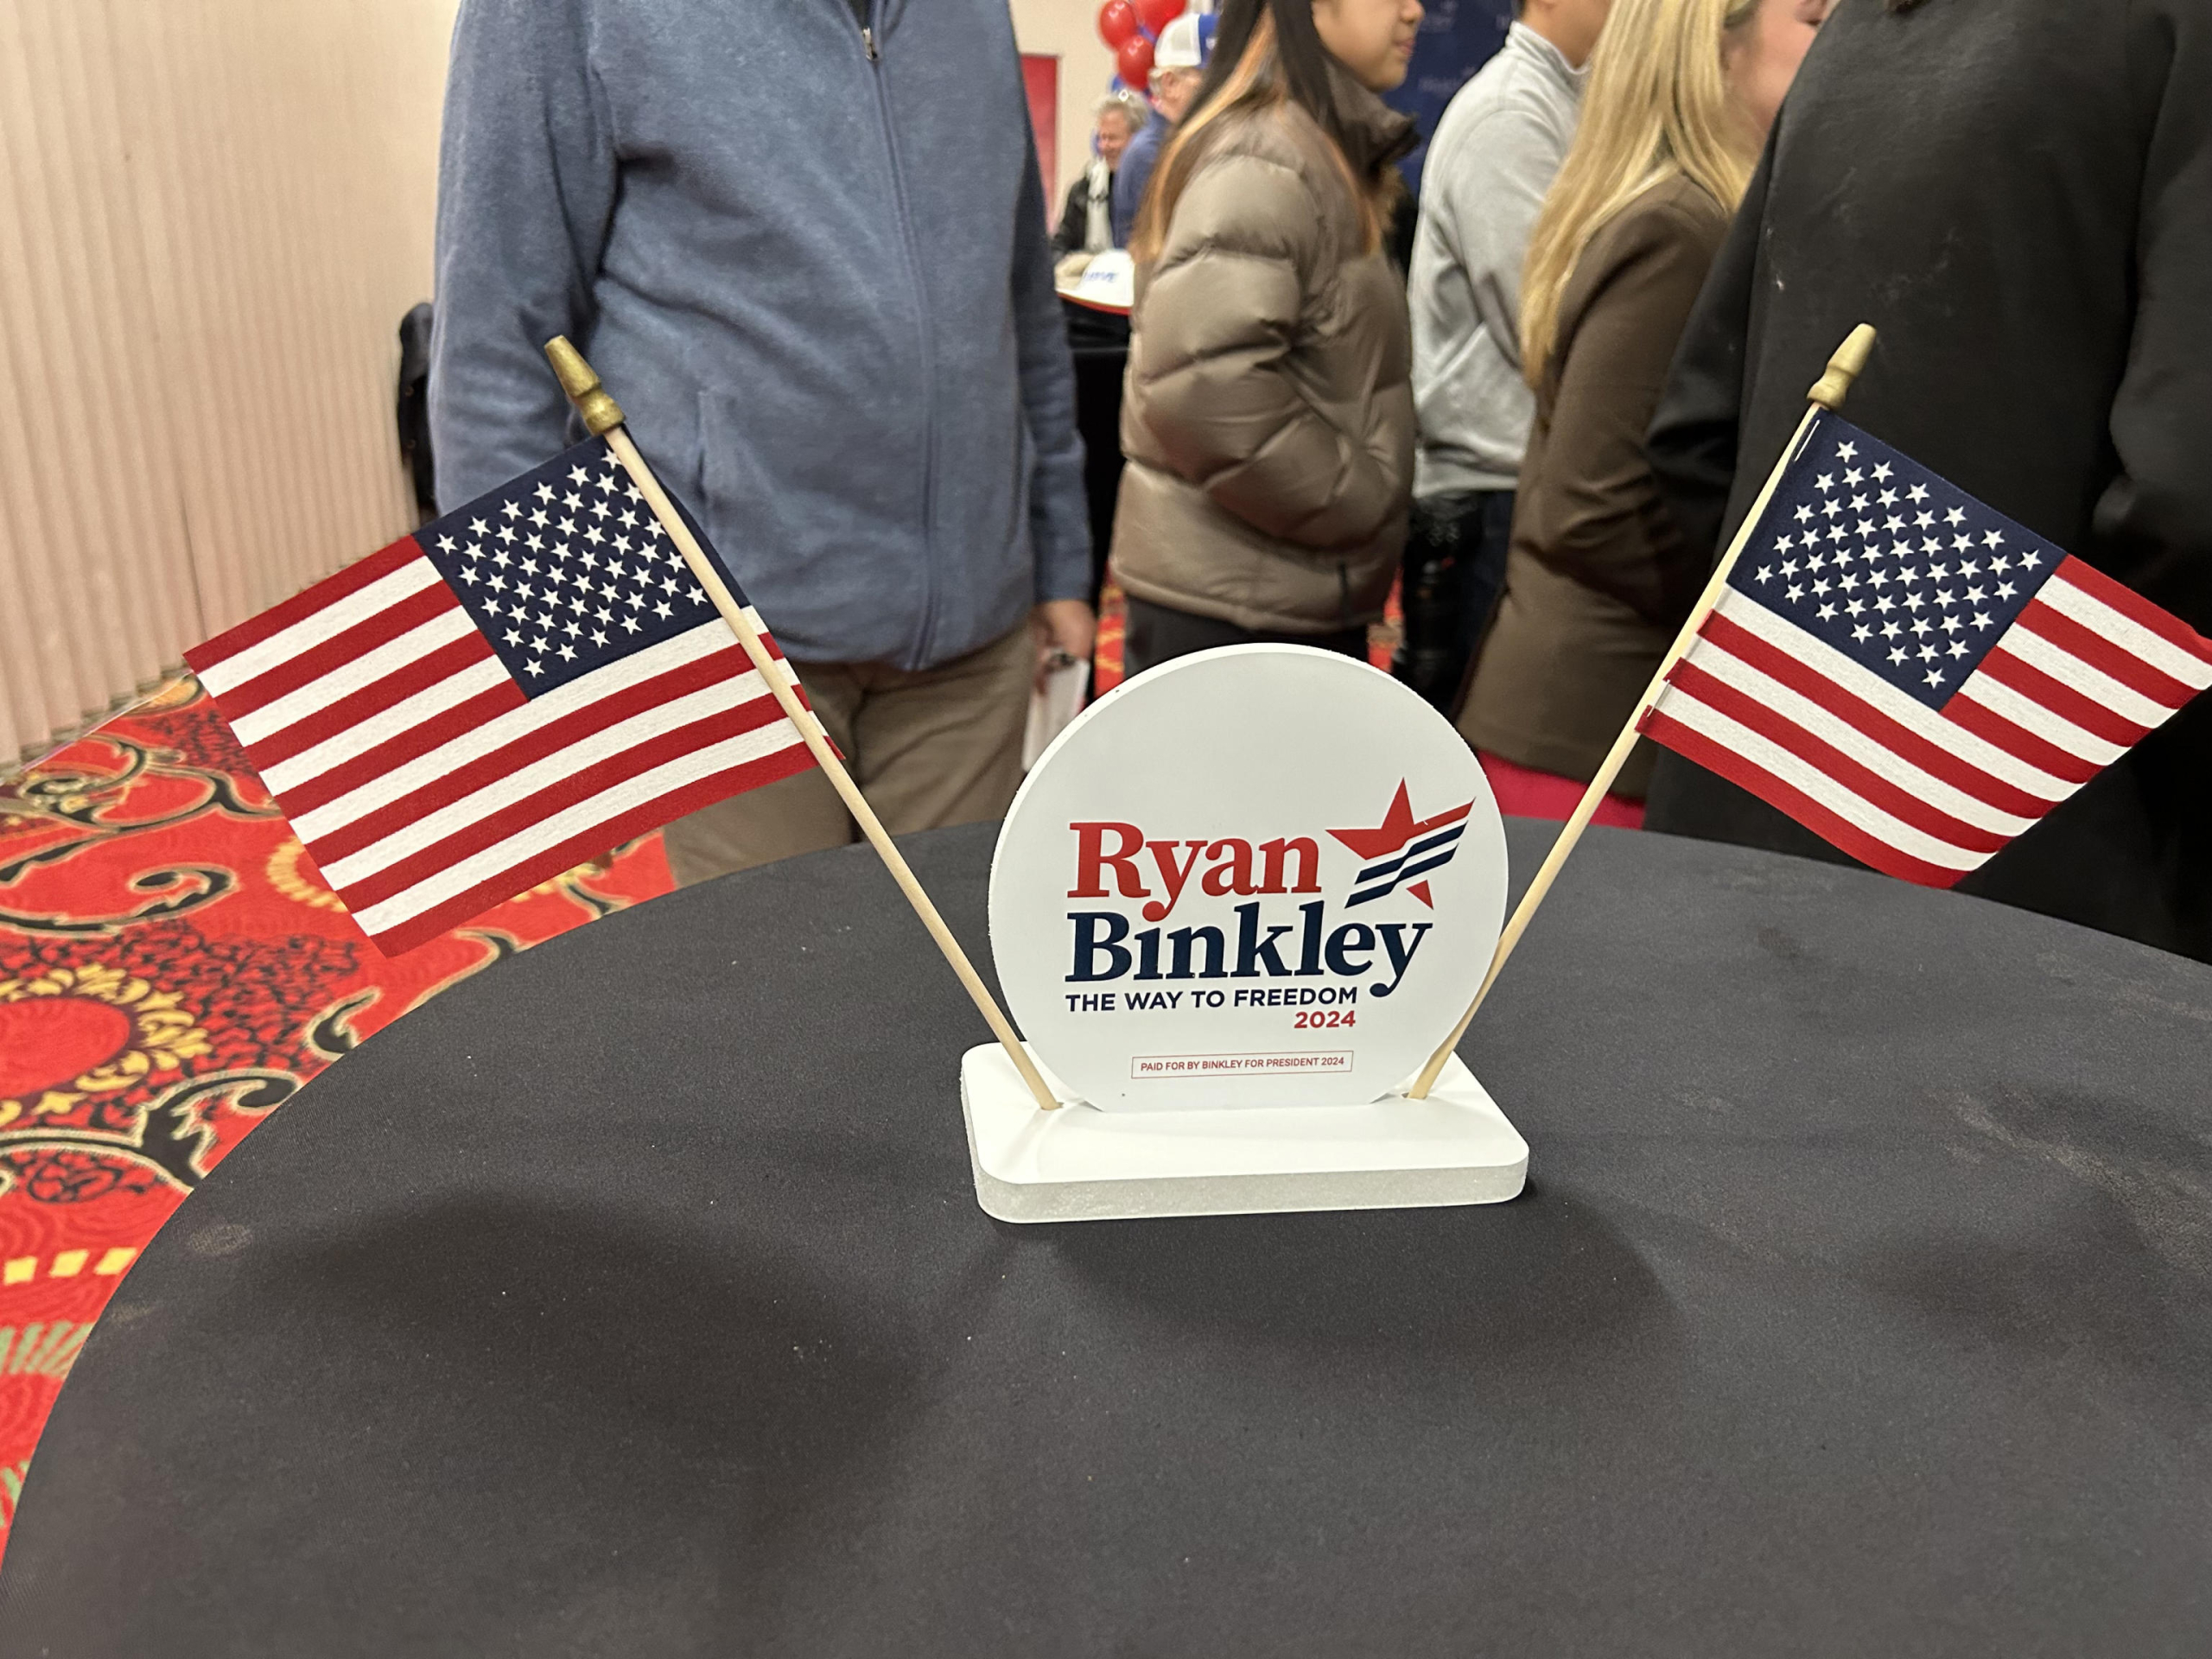 Un momento del convegno di Ryan Binkley in Iowa, 14 gennaio 2024.
ANSA/ SERENA DI RONZA